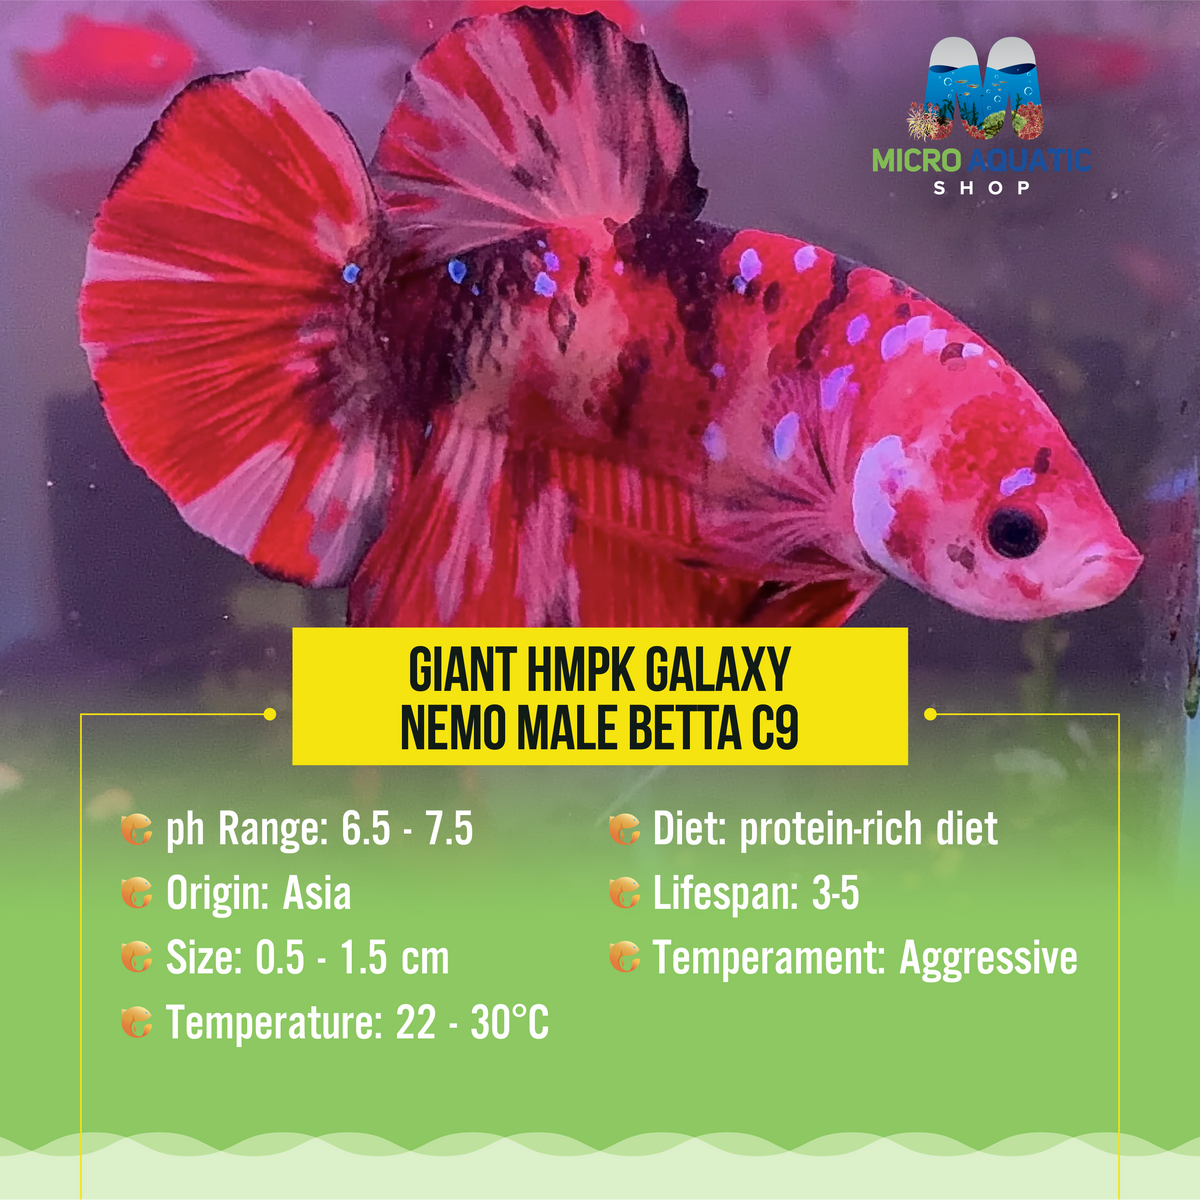 Giant HMPK Galaxy Nemo Male Betta C9